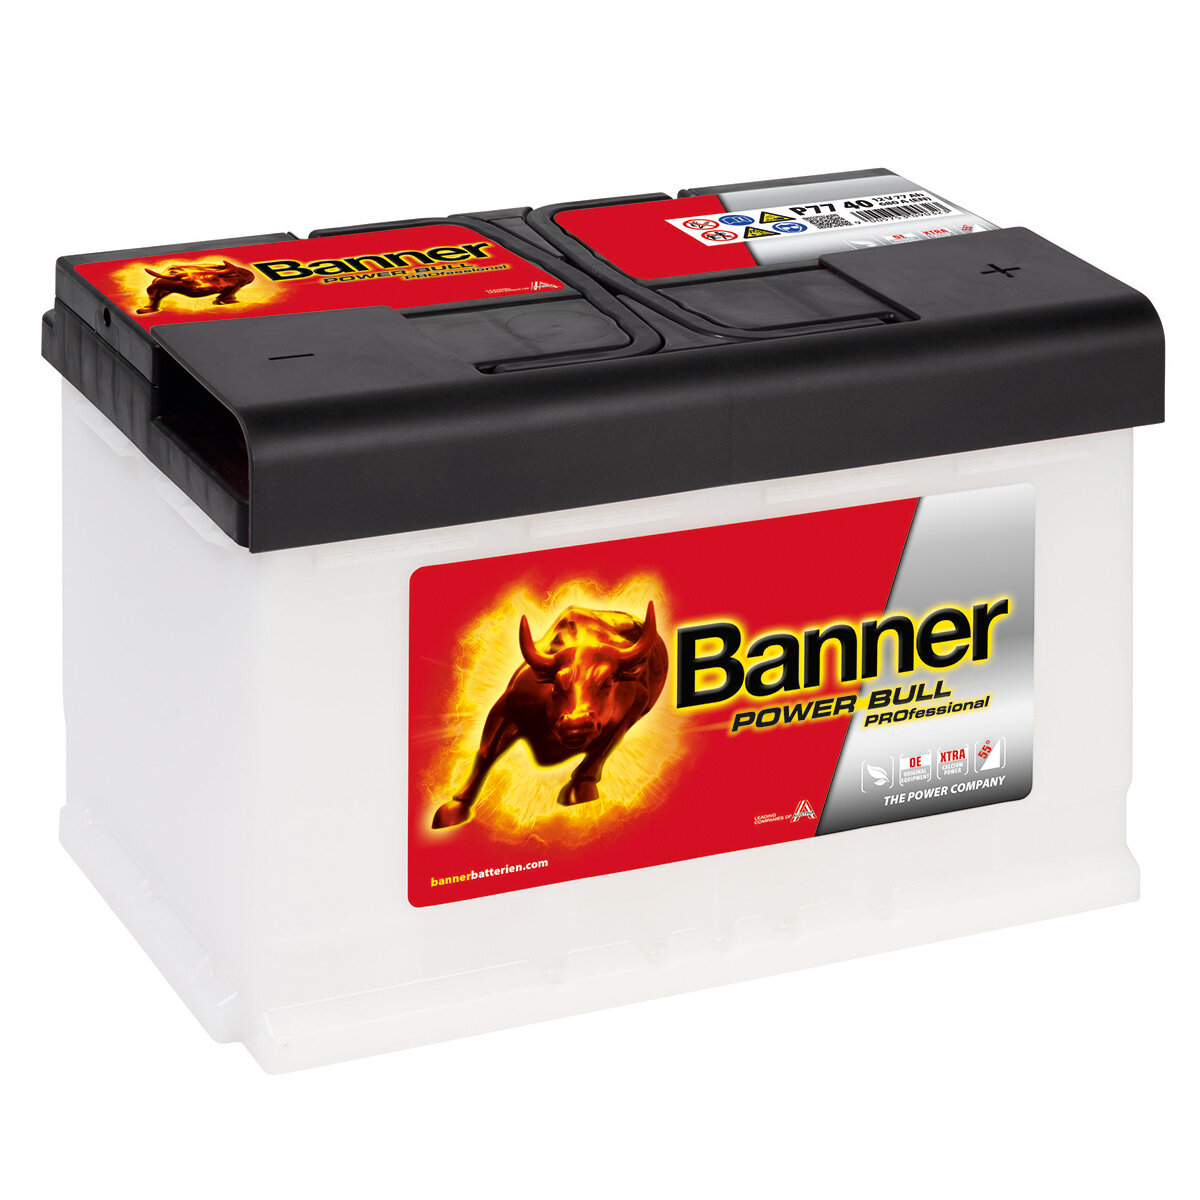 Autobatterie Banner Power Bull PRO 77Ah, 105,90 €